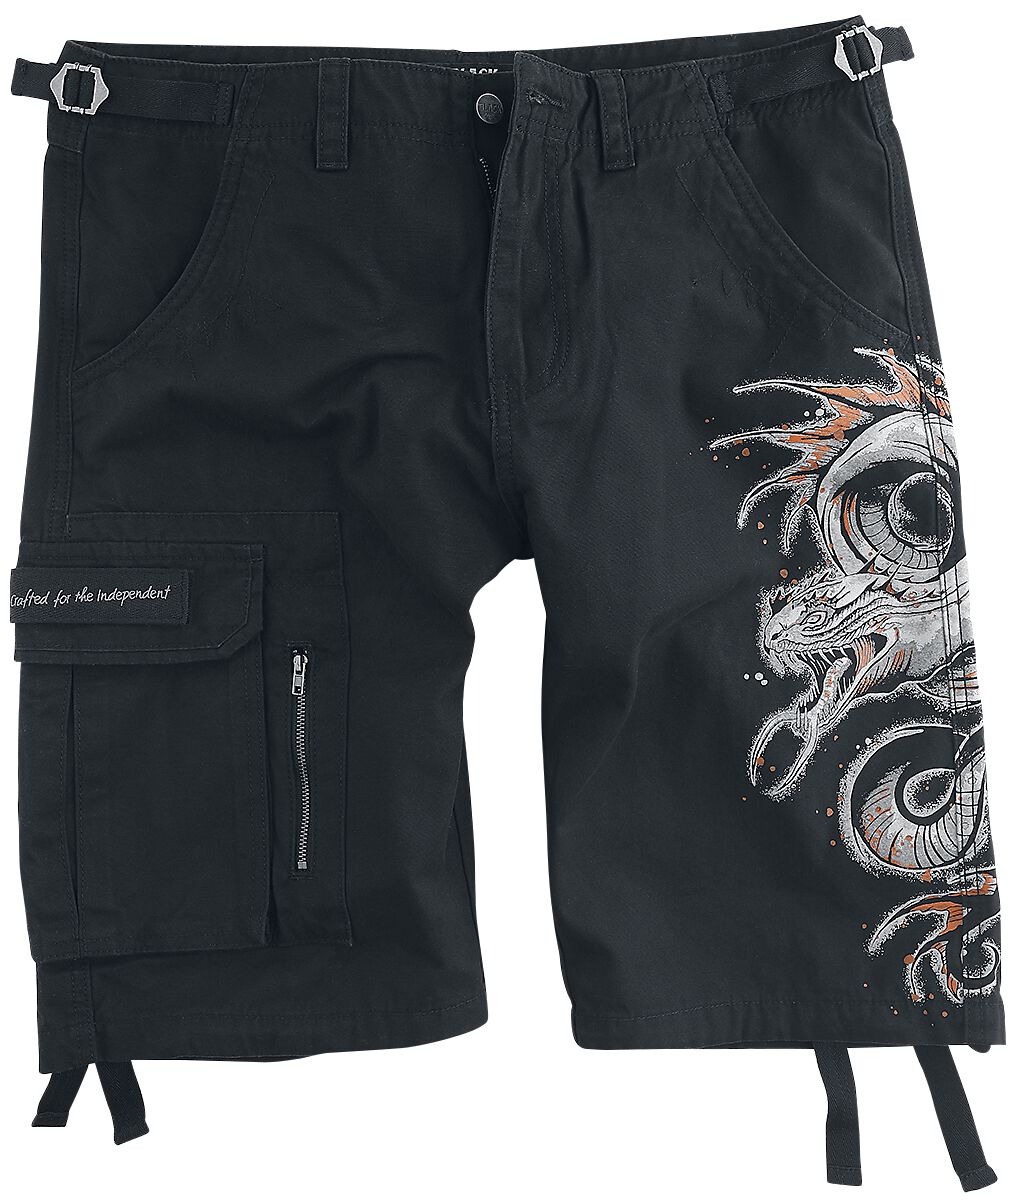 Black Premium by EMP Short - Shorts with Dragon Print - S bis XXL - für Männer - Größe M - schwarz